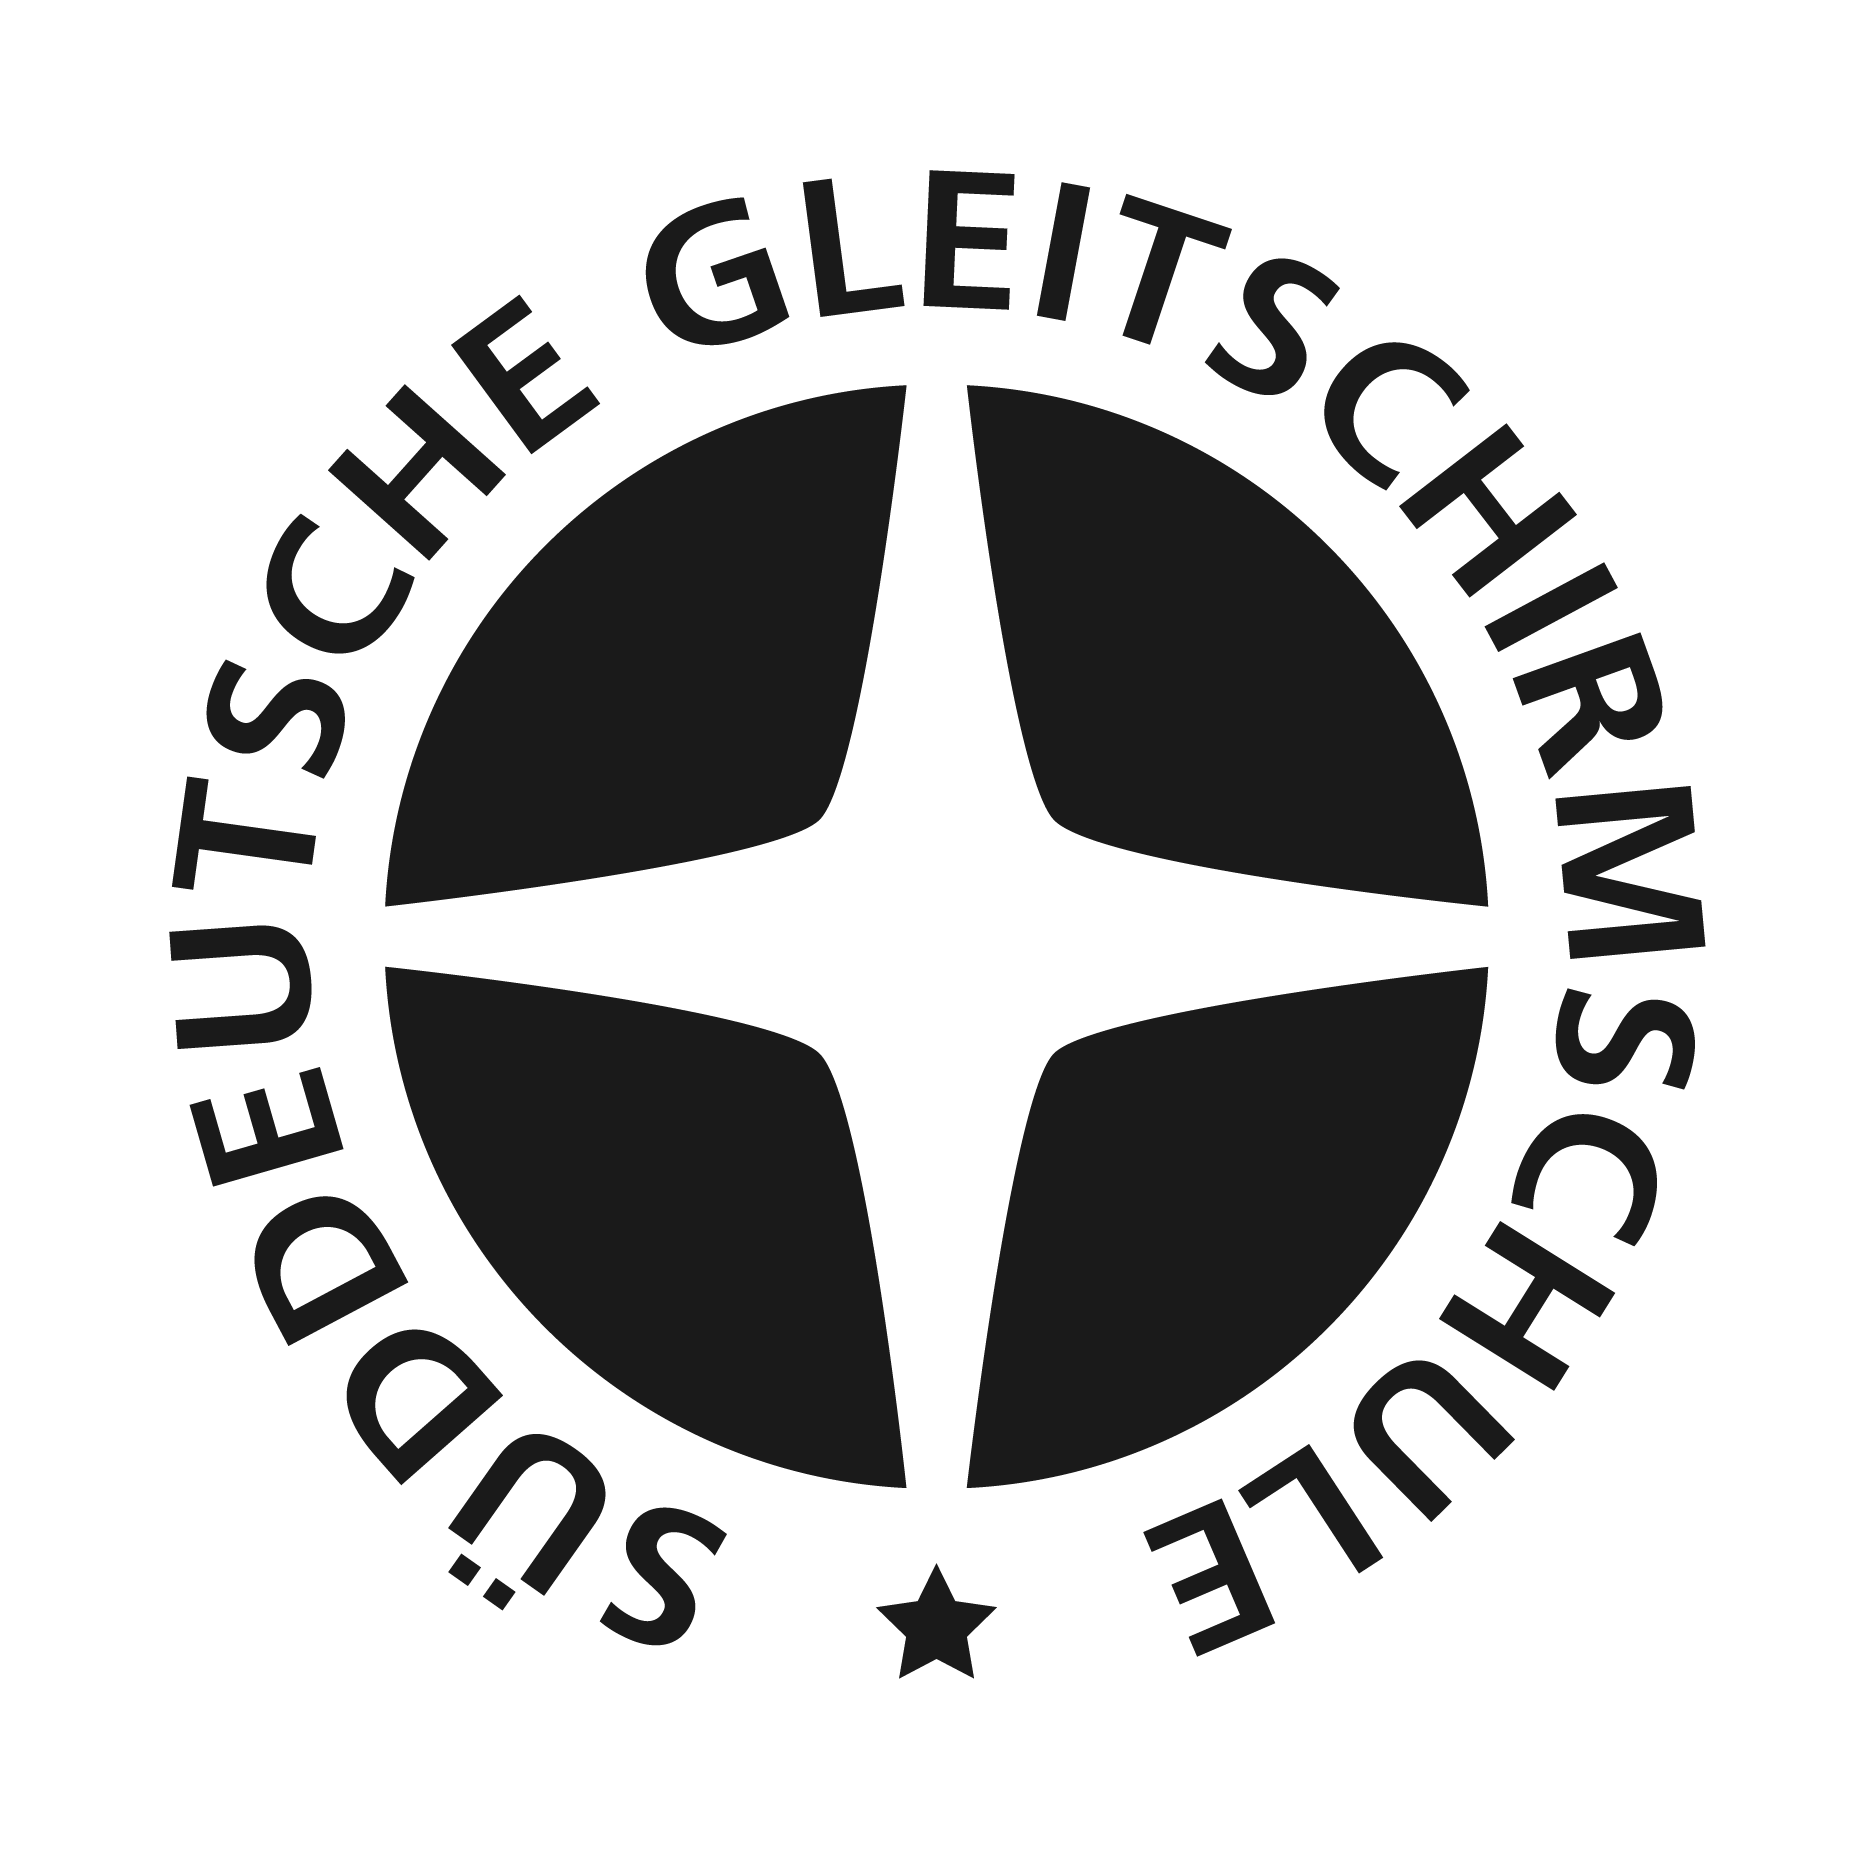 Süddeutsche Gleitschirmschule - Tandem Paragliding